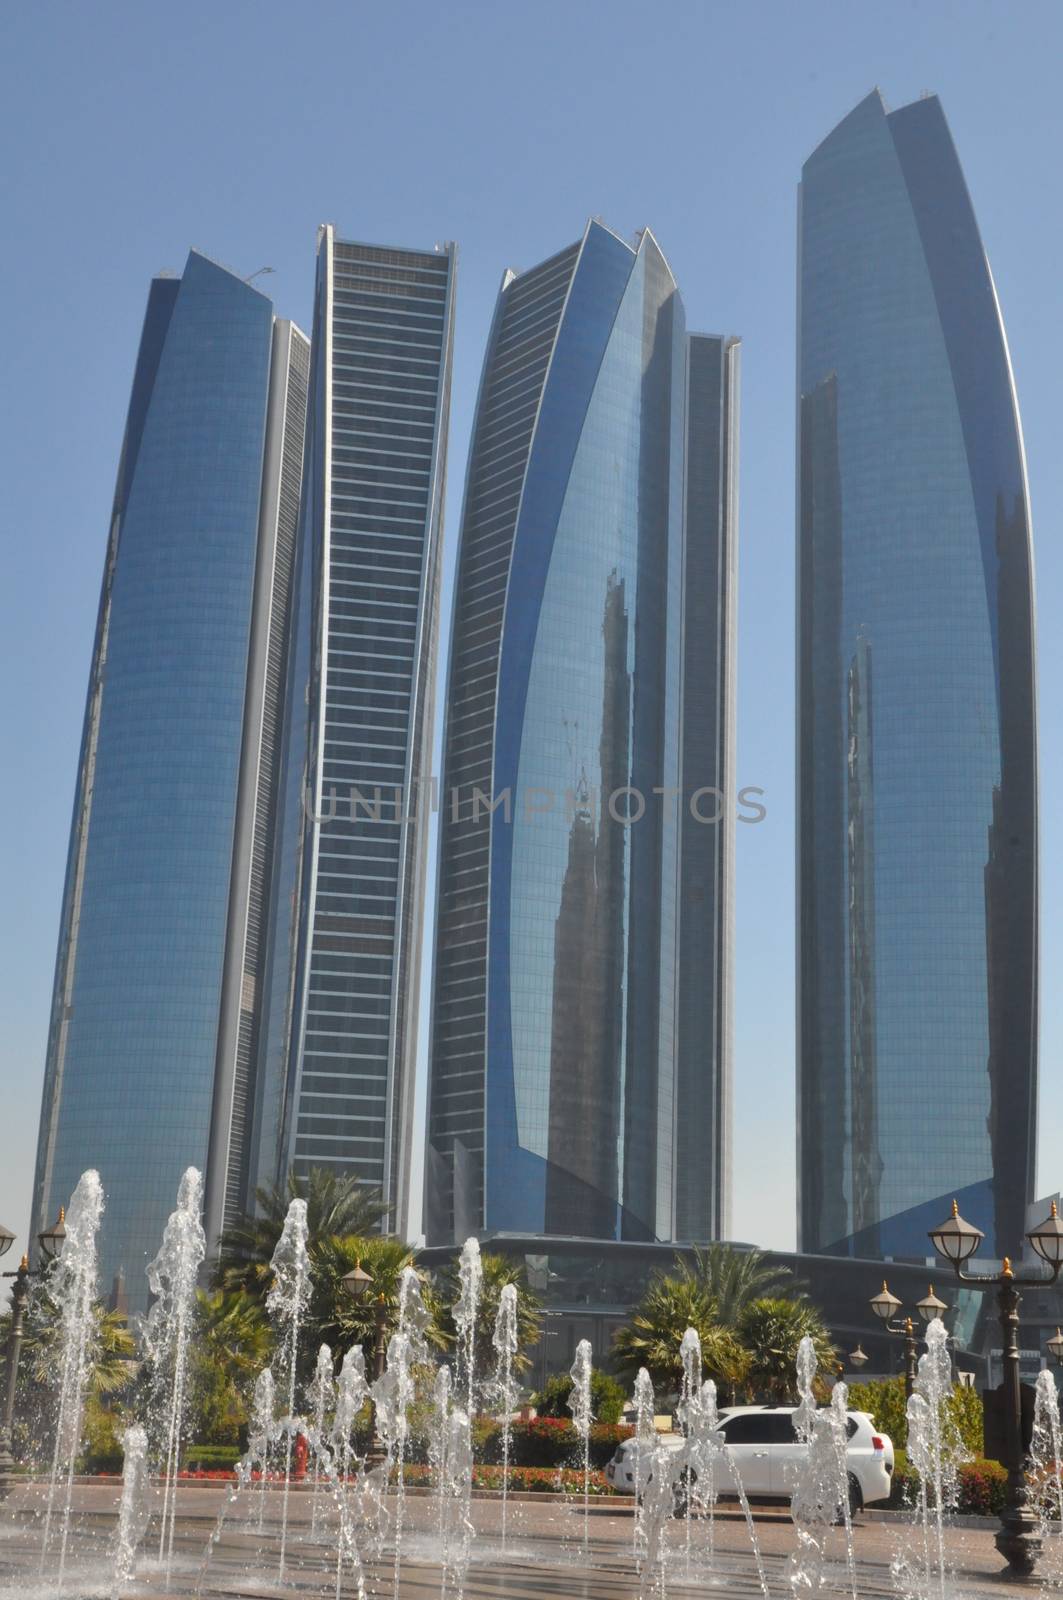 Etihad Towers in Abu Dhabi, UAE by sainaniritu